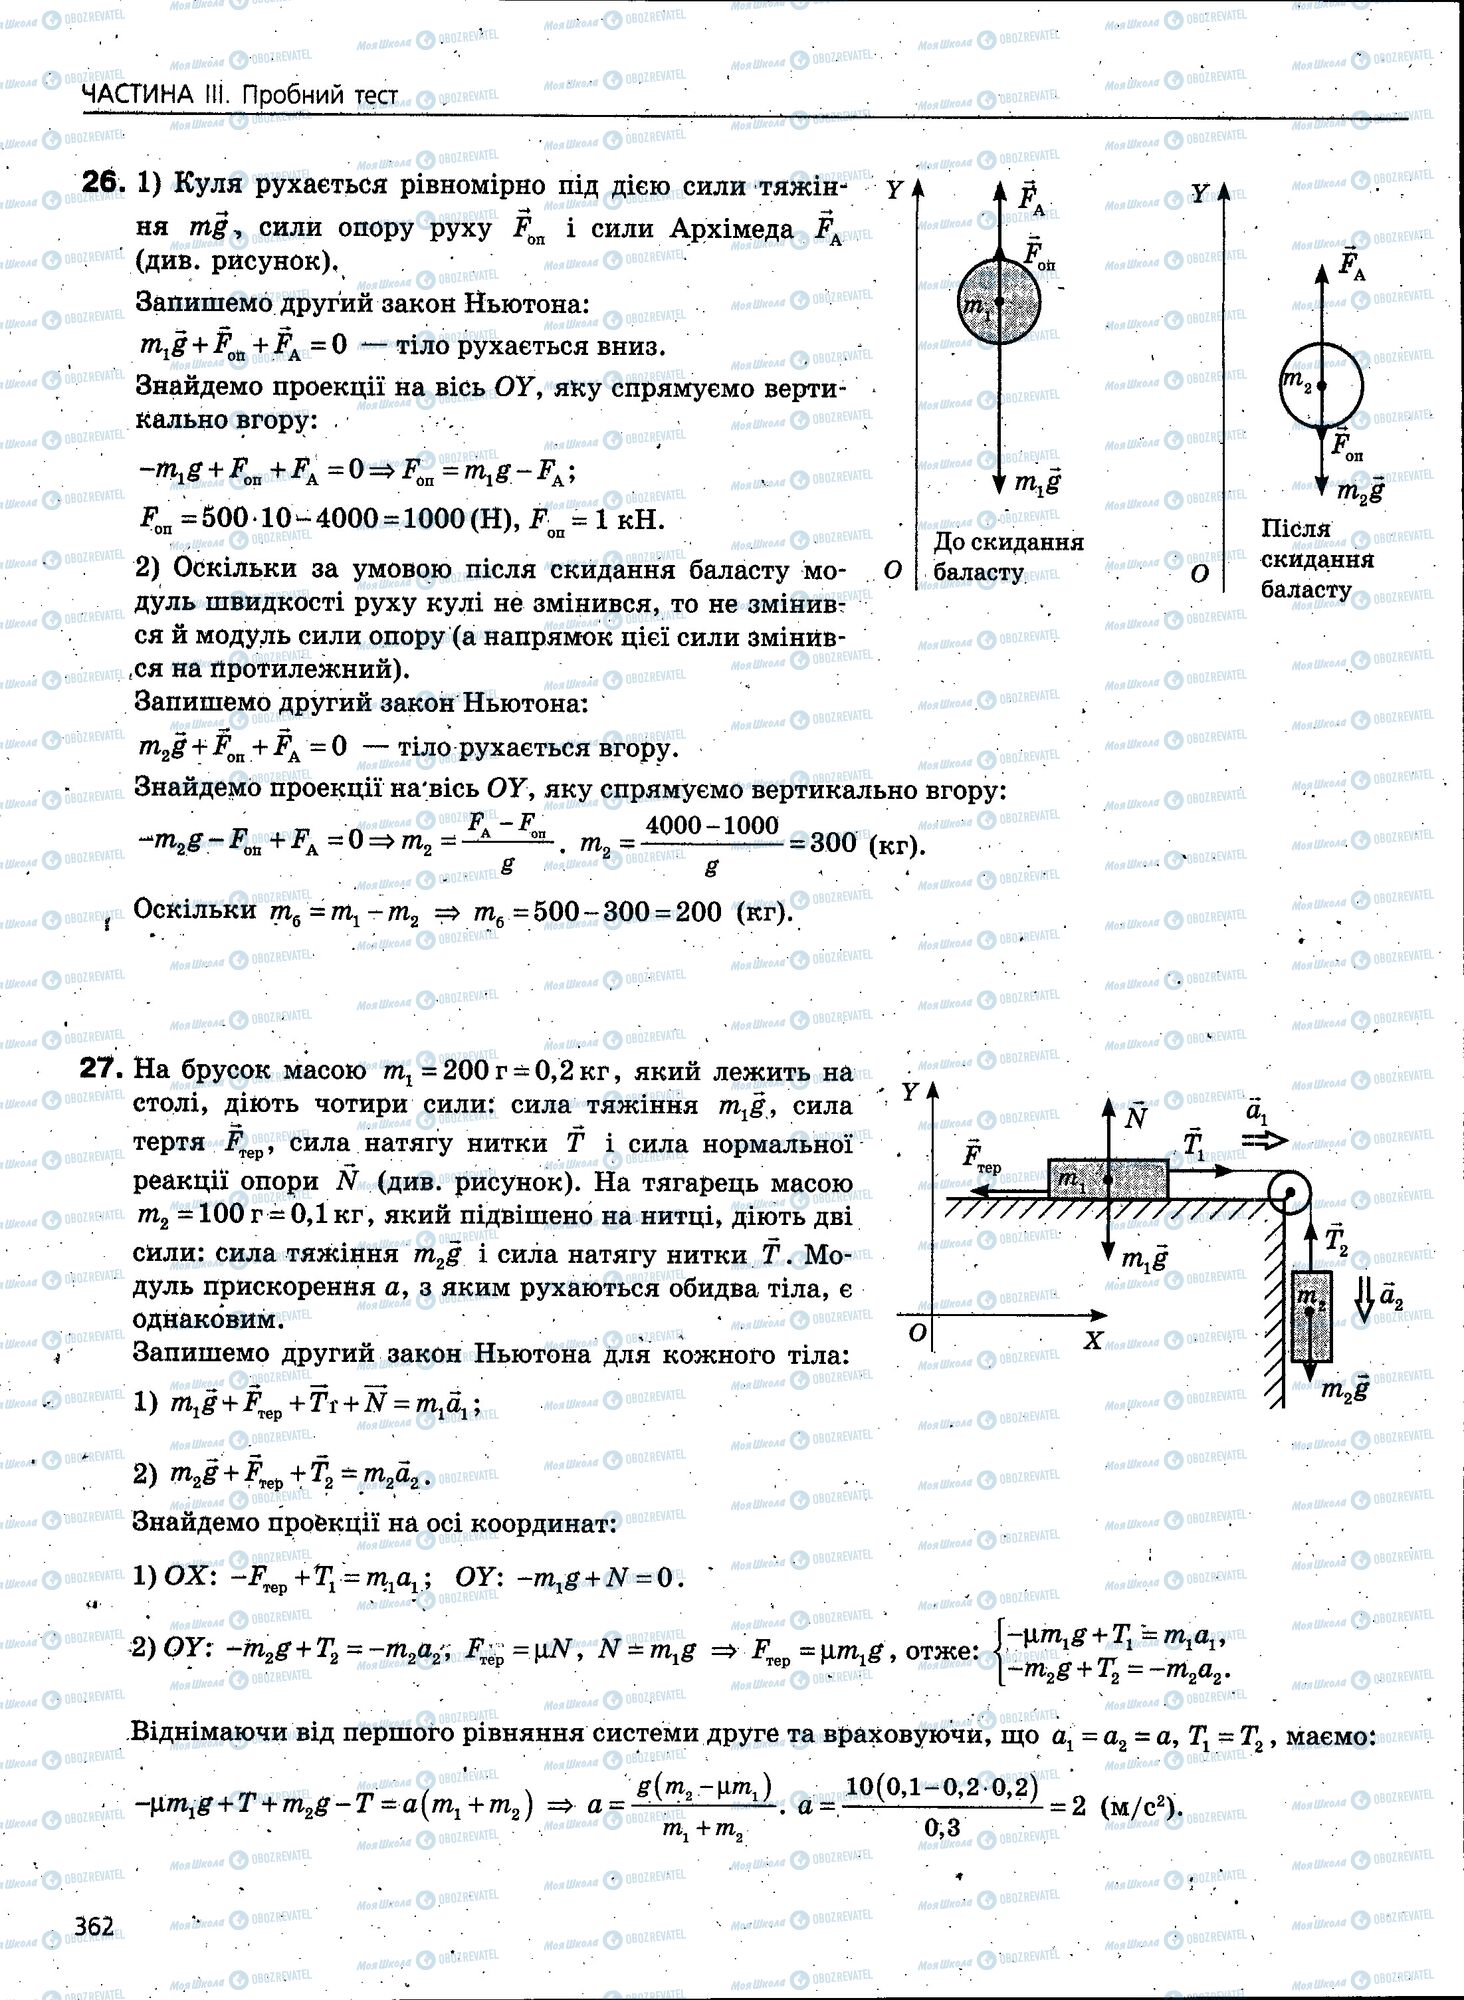 ЗНО Физика 11 класс страница 362